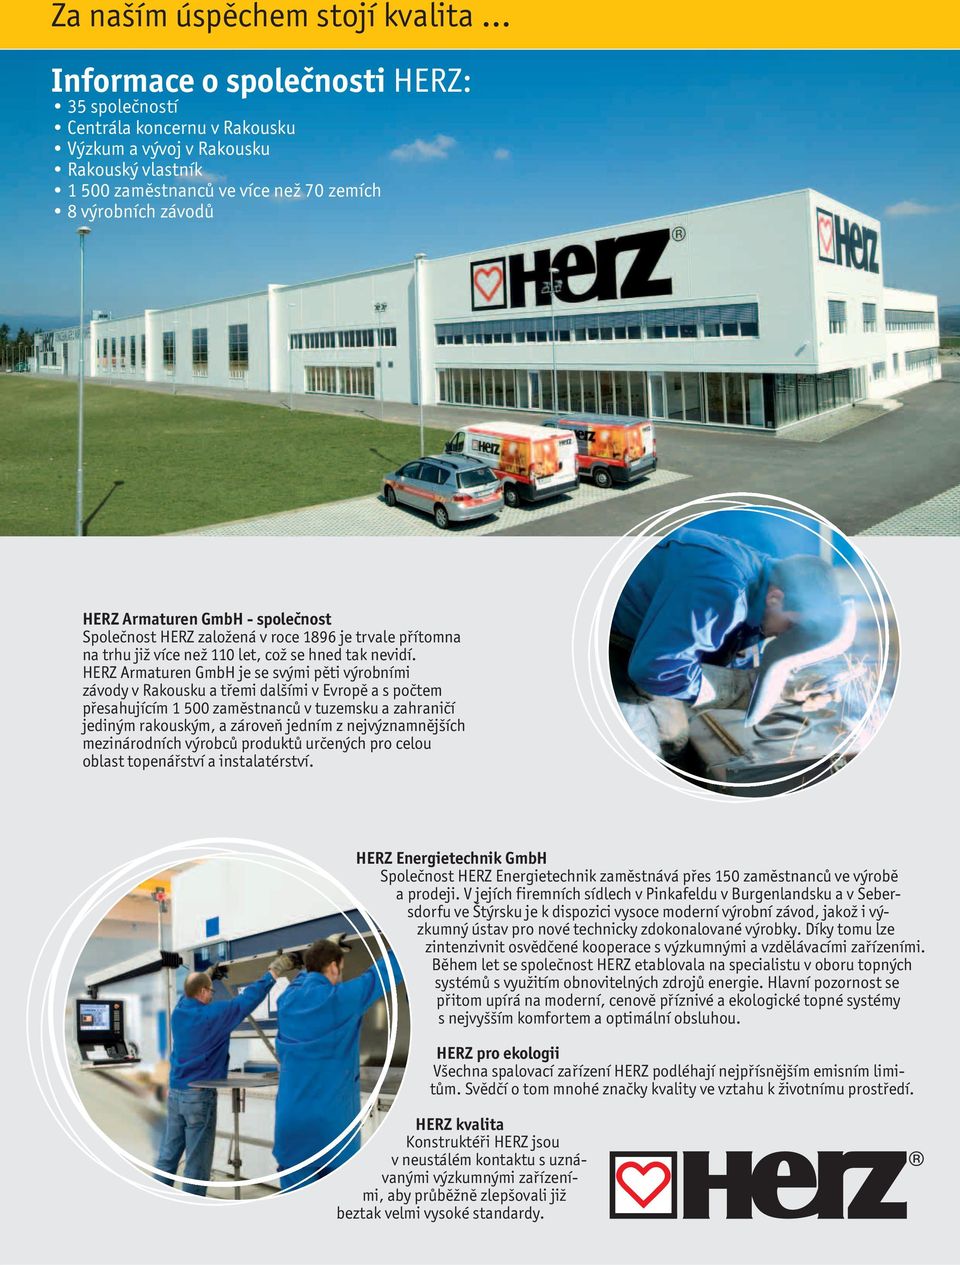 HERZ Armaturen GmbH je se svými pěti výrobními závody v Rakousku a třemi dalšími v Evropě a s počtem přesahujícím 1 500 zaměstnanců v tuzemsku a zahraničí jediným rakouským, a zároveň jedním z